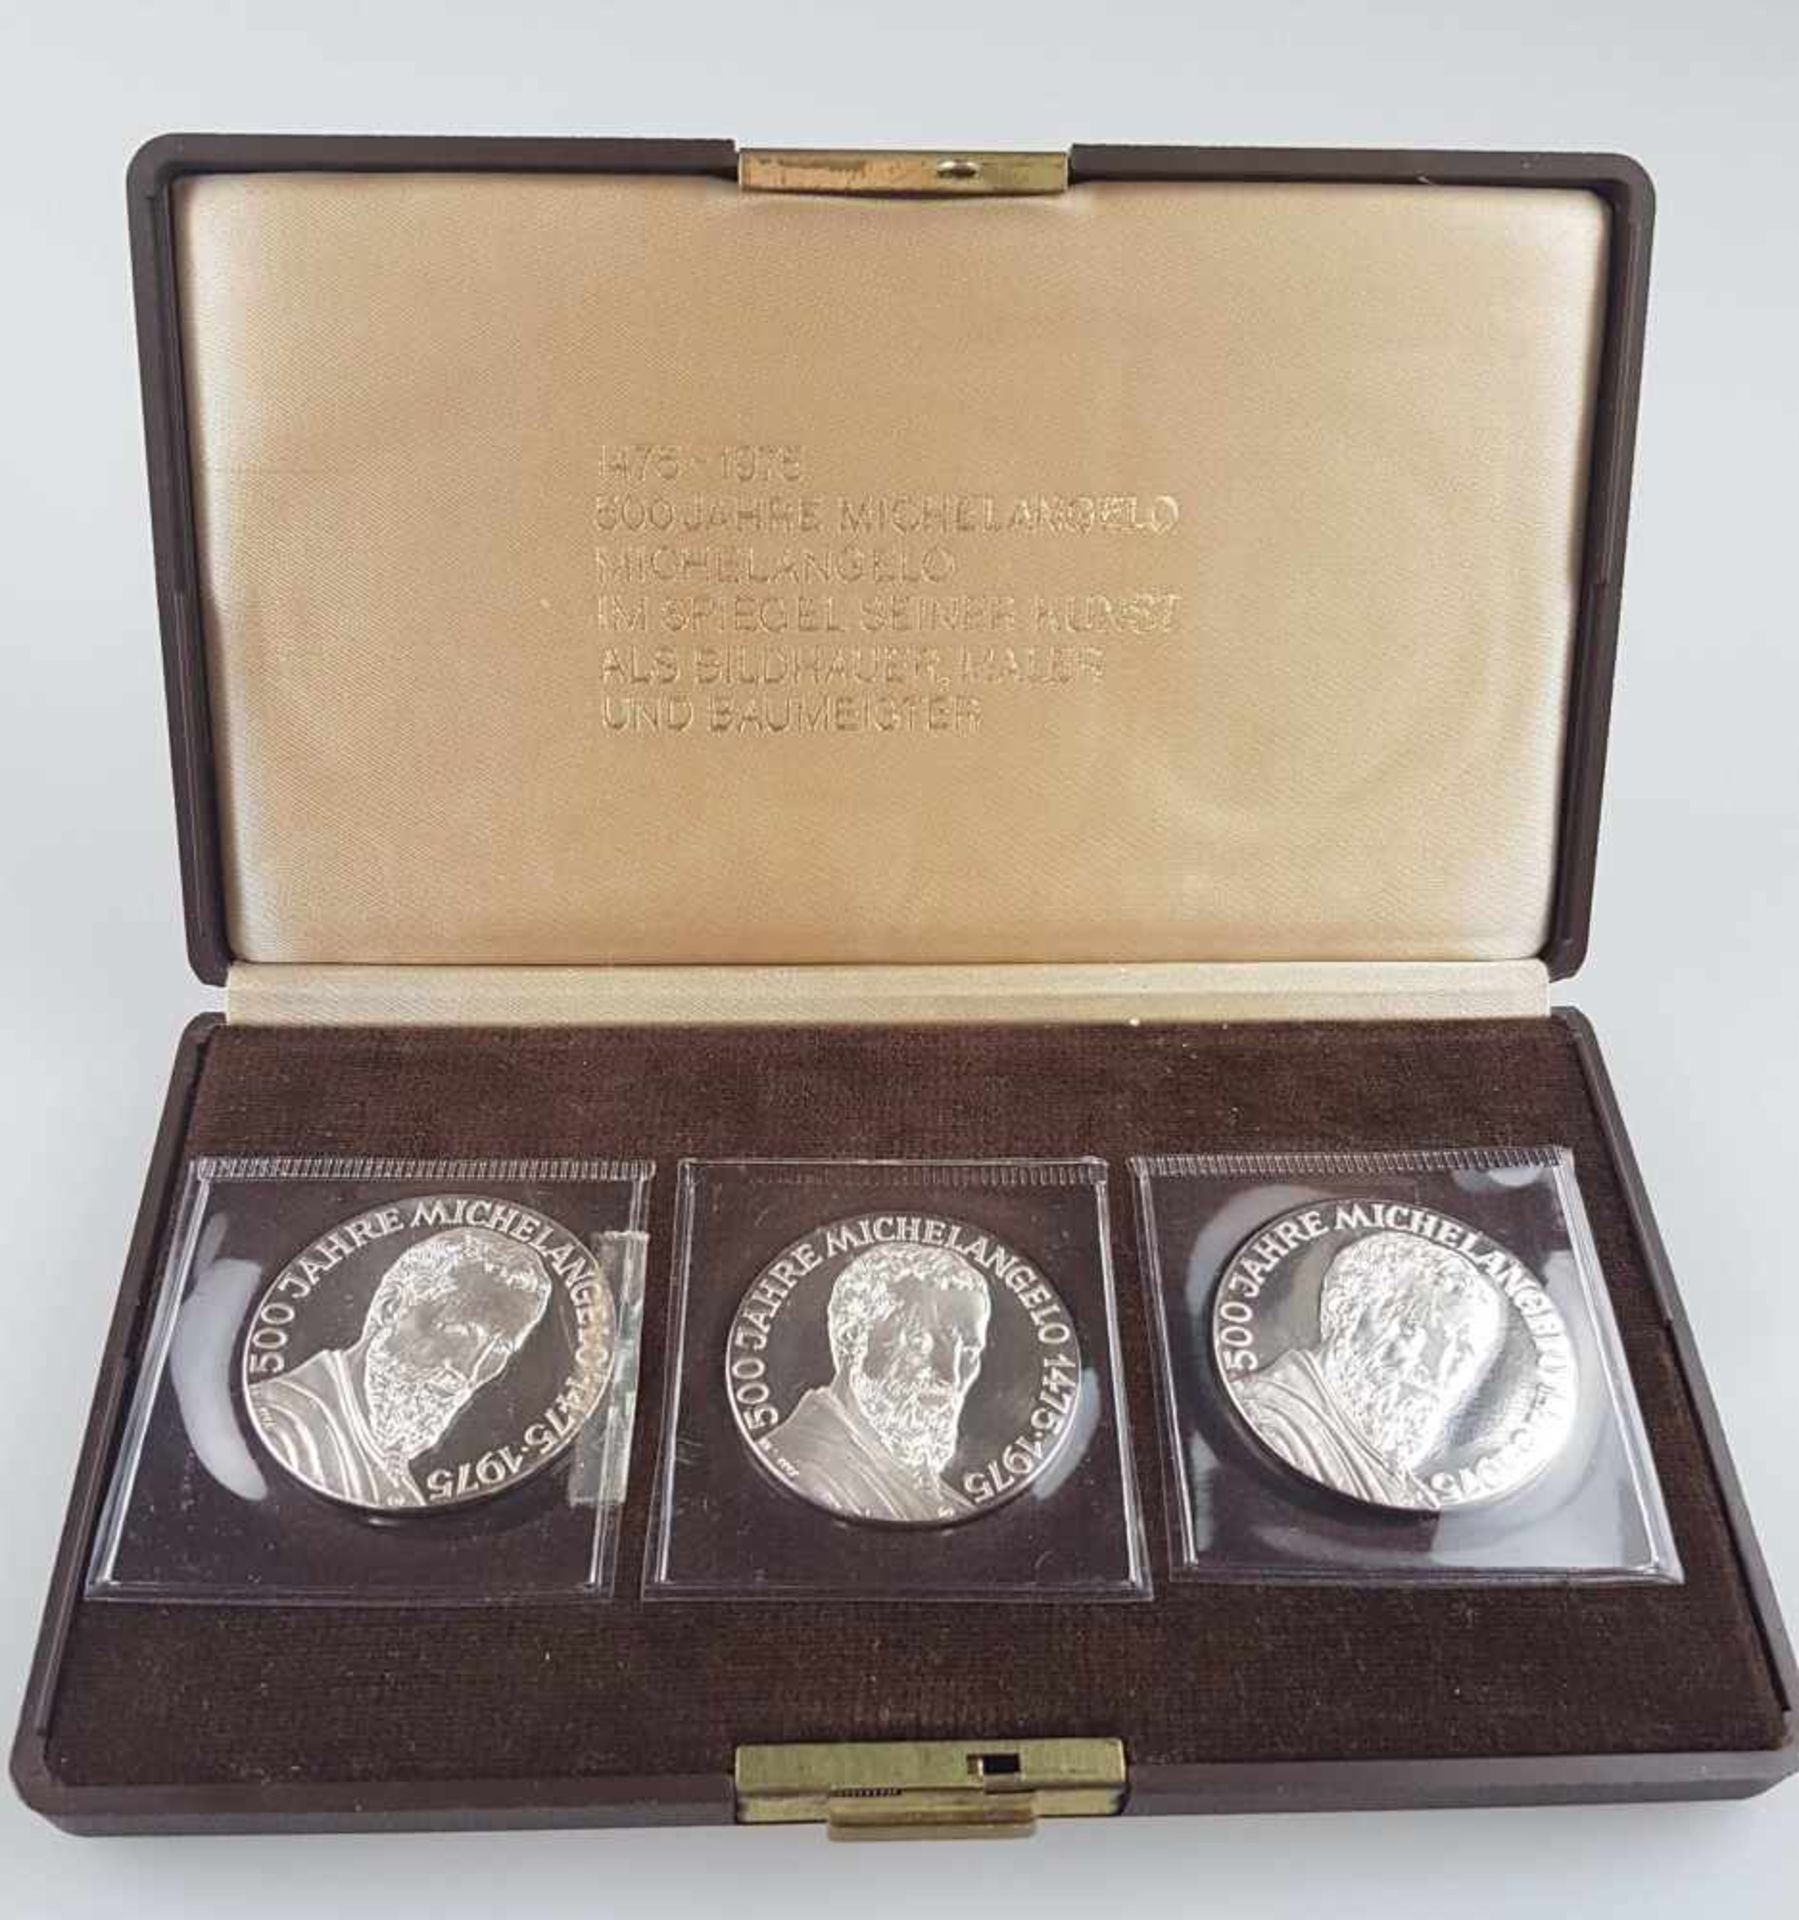 Dreifacher Medaillensatz zu " 500 Jahre MICHELANGELO "- Silber 999/000, Gesamtgewicht ohne Box: